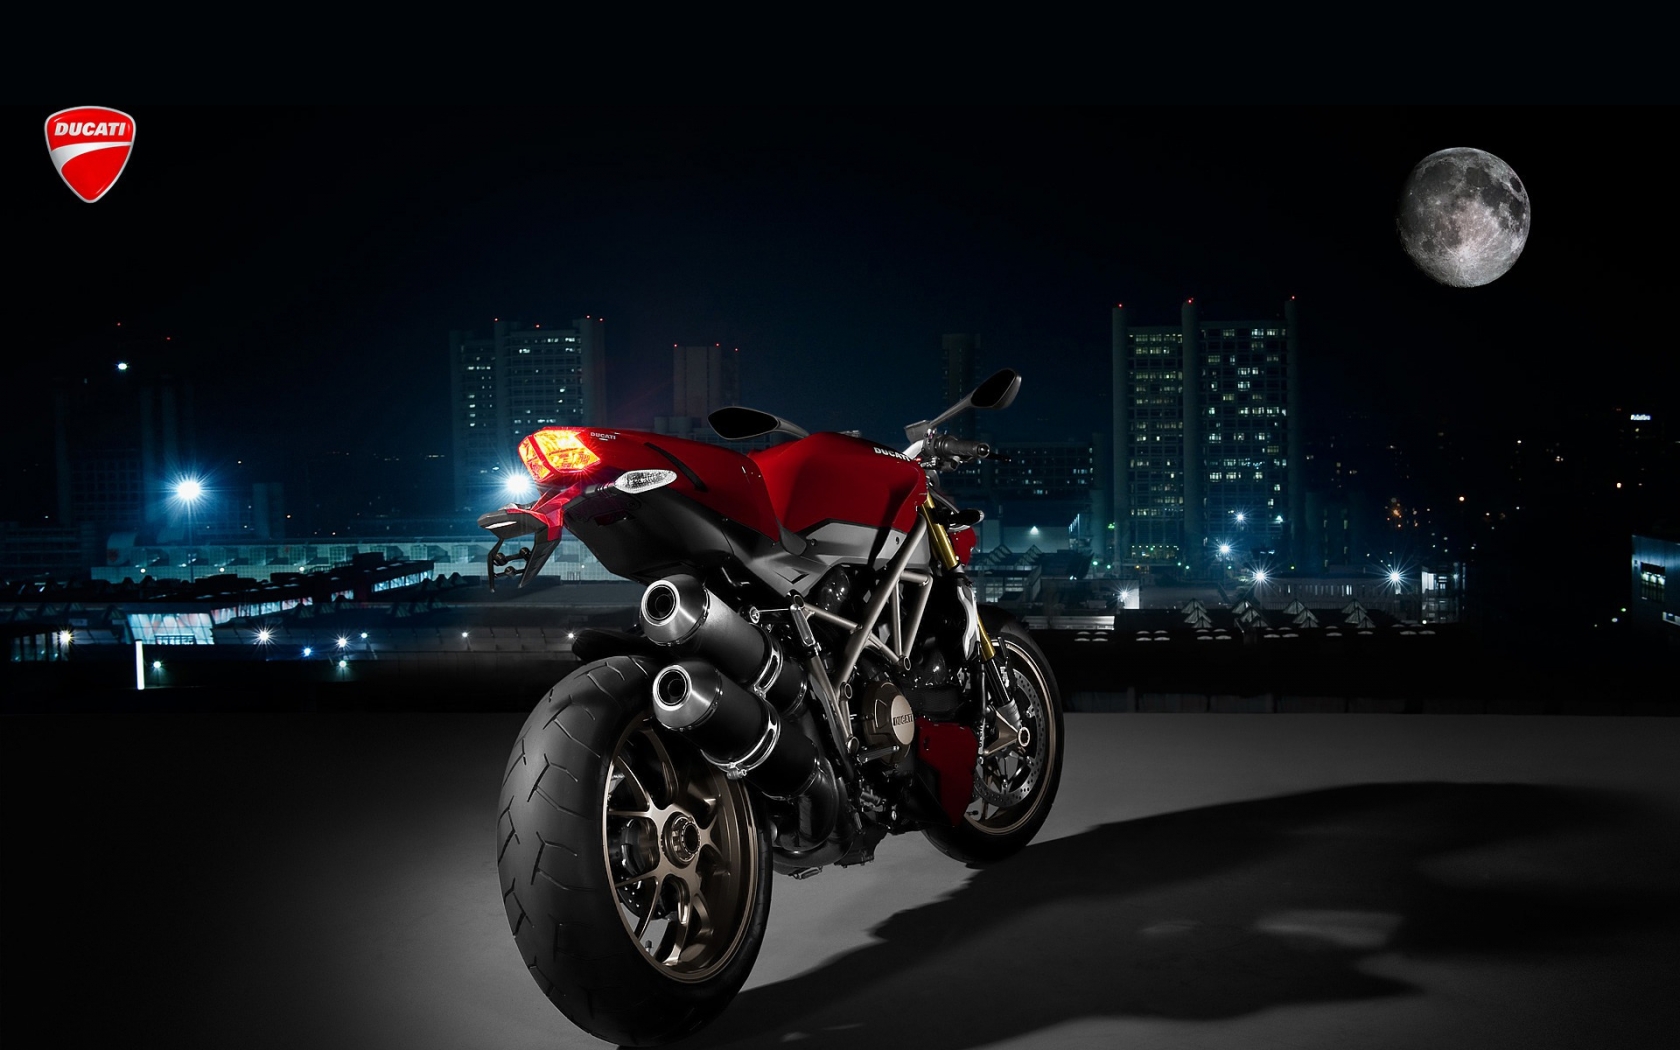 Ducati Super Sport Rear Angle for 1680 x 1050 widescreen resolution